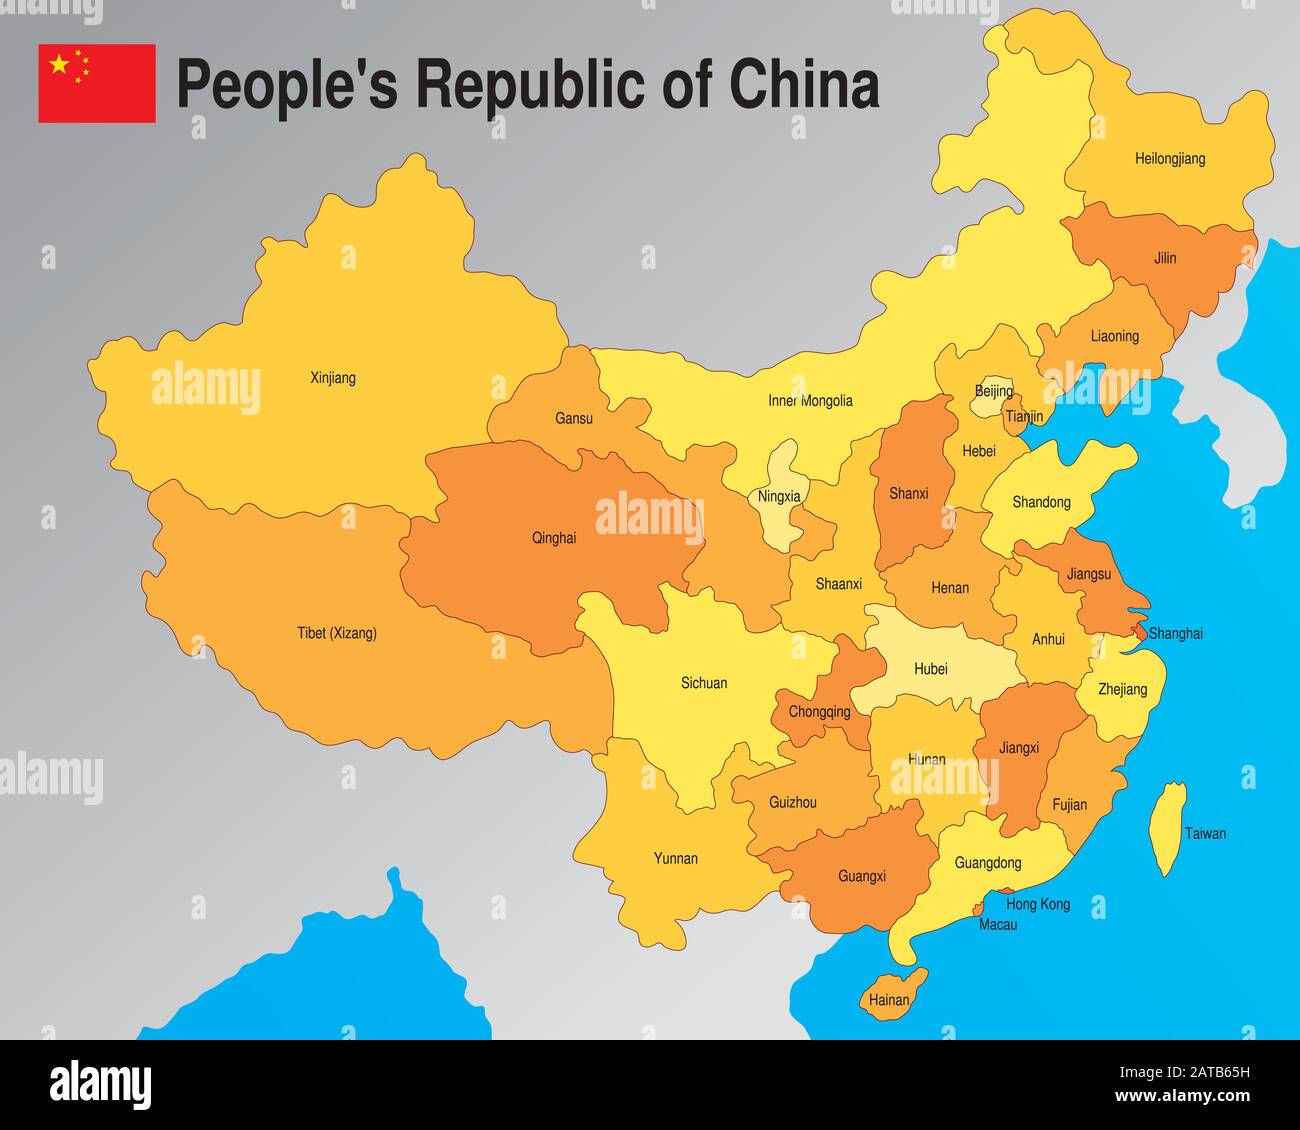 Politische Karte der Volksrepublik China mit der Aufteilung der Provinzen mit ihren Namen in Gelb- und Orangentönen. Vektorbild Stock Vektor